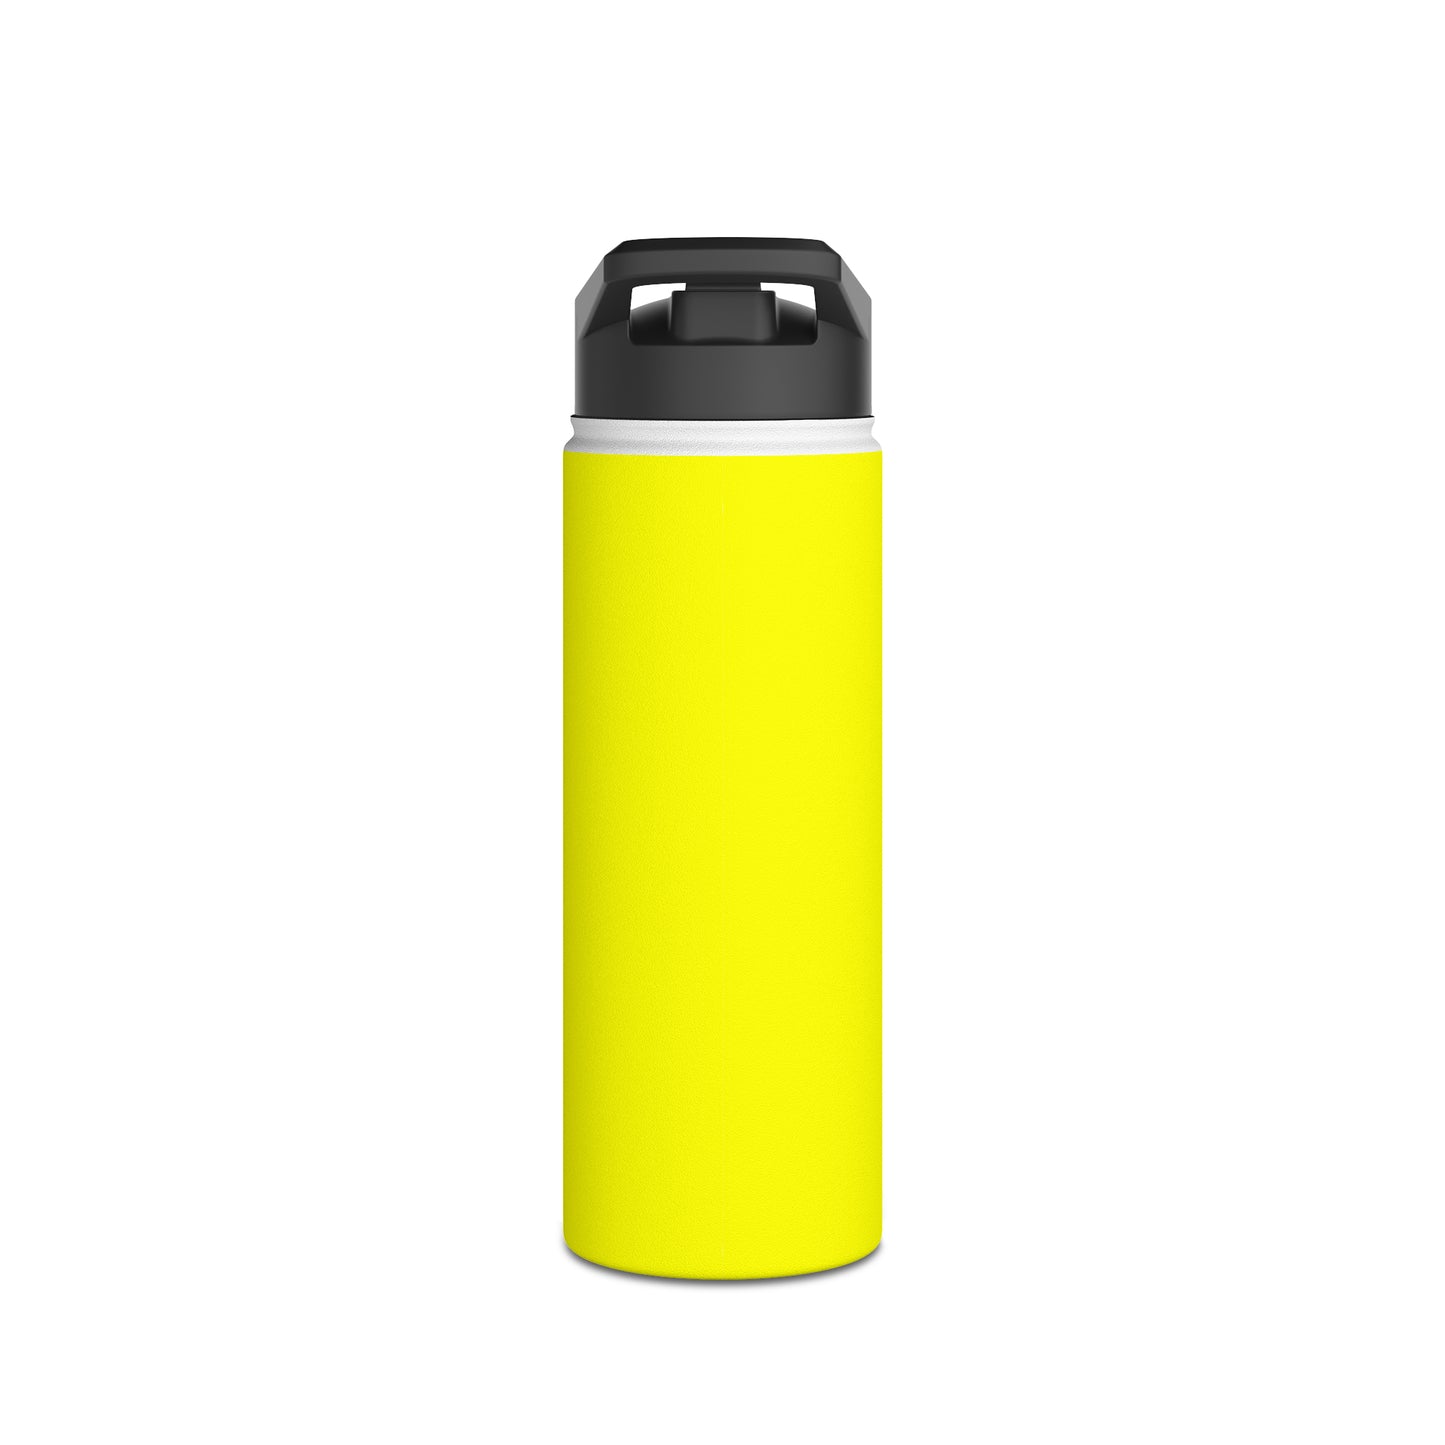 Neon Yellow FFFF00 - Water Bottle